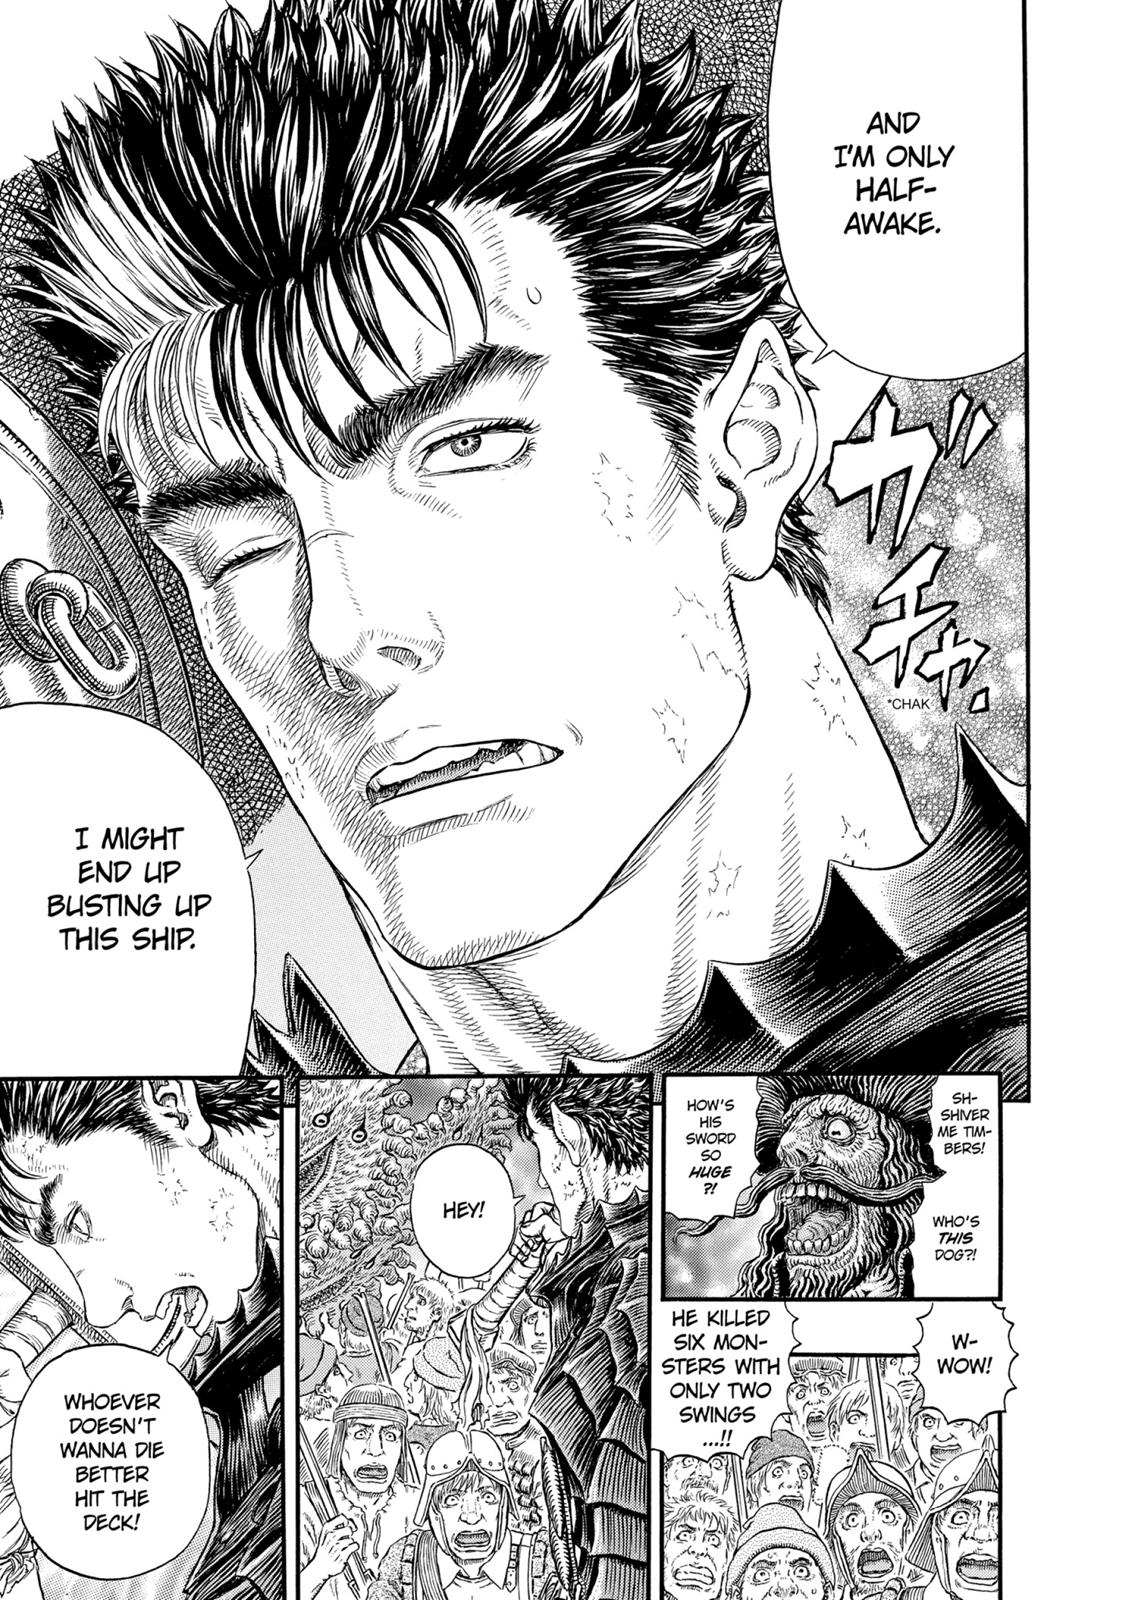 Berserk Manga Chapter 310 image 06